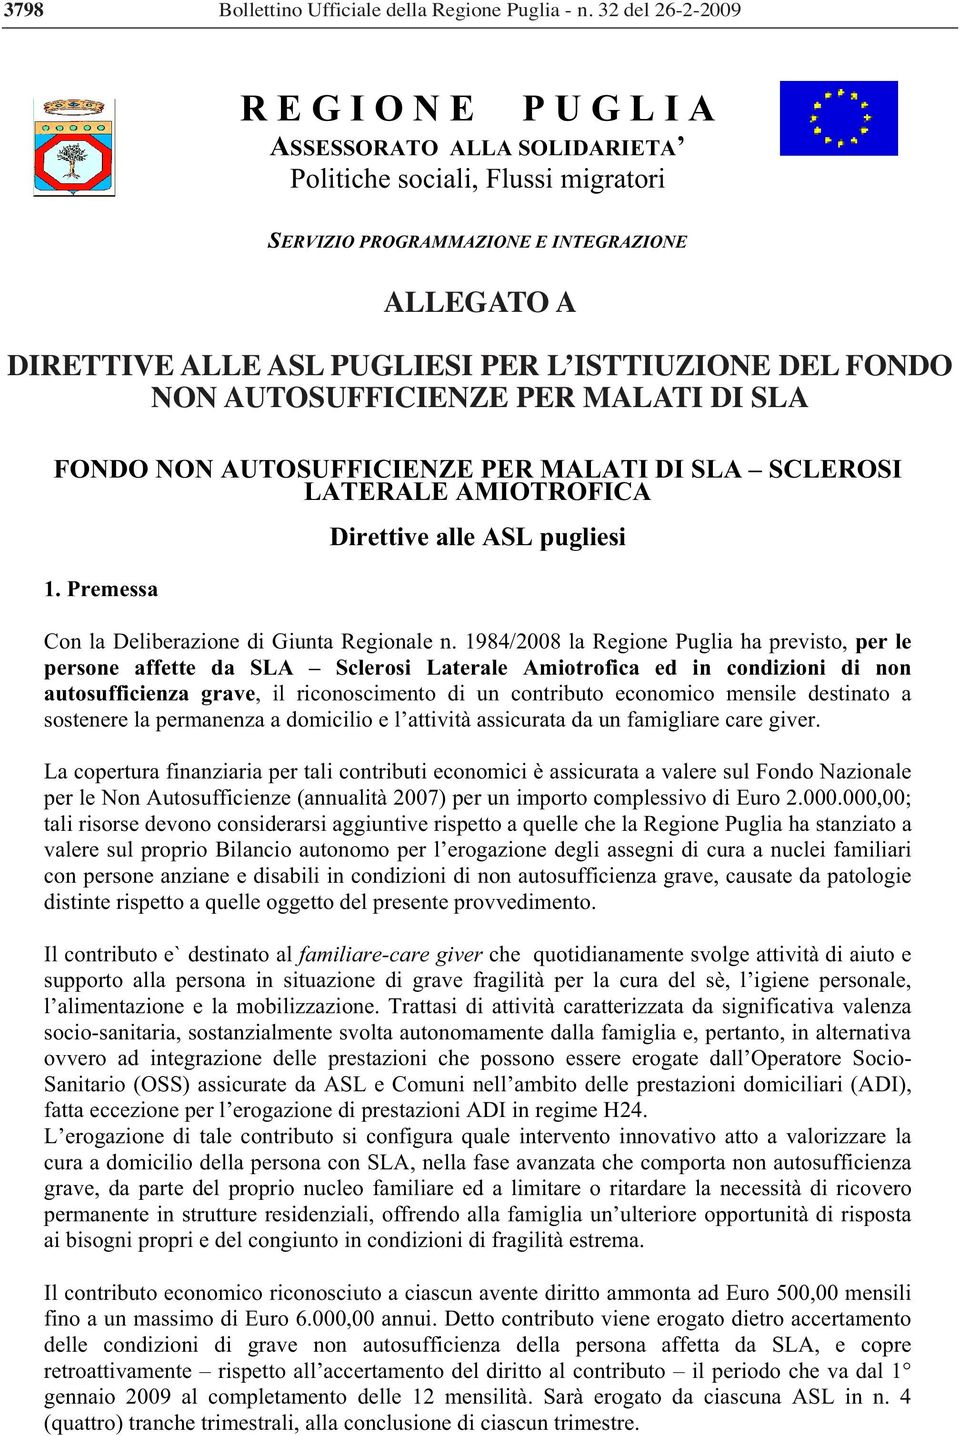 1984/2008 la Regione Puglia ha previsto, per le persone affette da SLA Sclerosi Laterale Amiotrofica ed in condizioni di non autosufficienza grave, il riconoscimento di un contributo economico